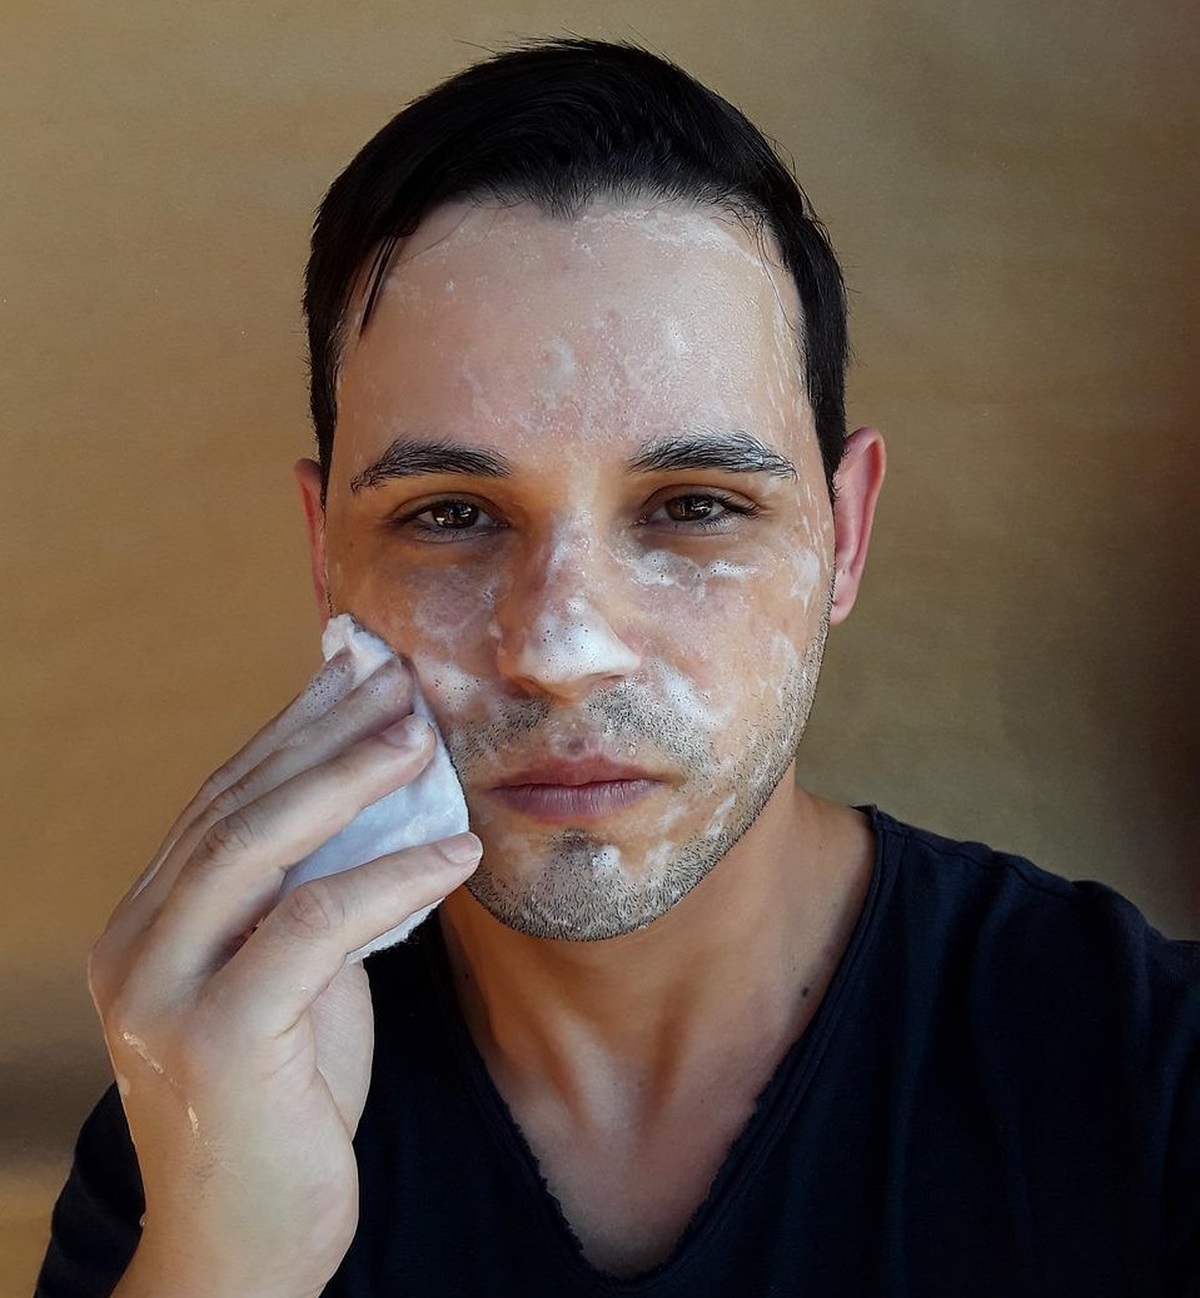 Prawidłowe oczyszczanie twarzy – jak to robić?